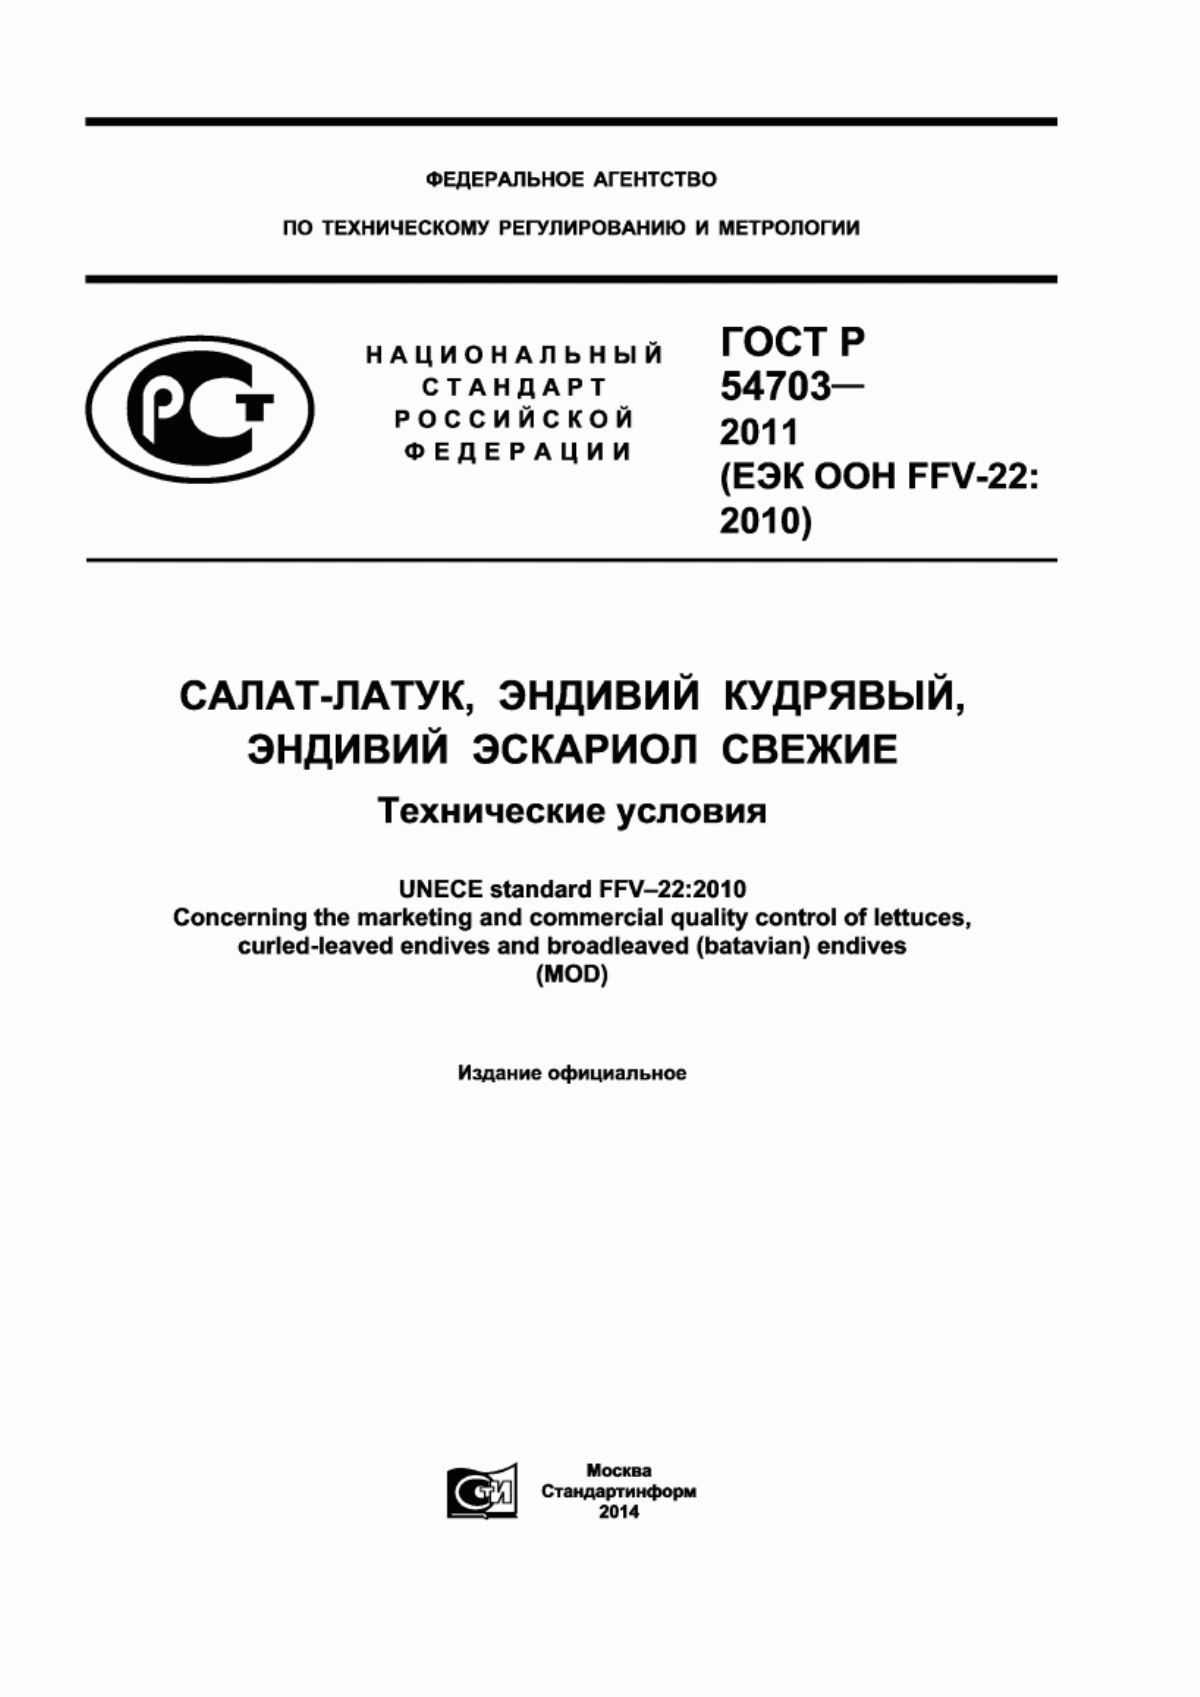 ГОСТ Р 54703-2011 Салат-латук, эндивий кудрявый, эндивий эскариол свежие. Технические условия